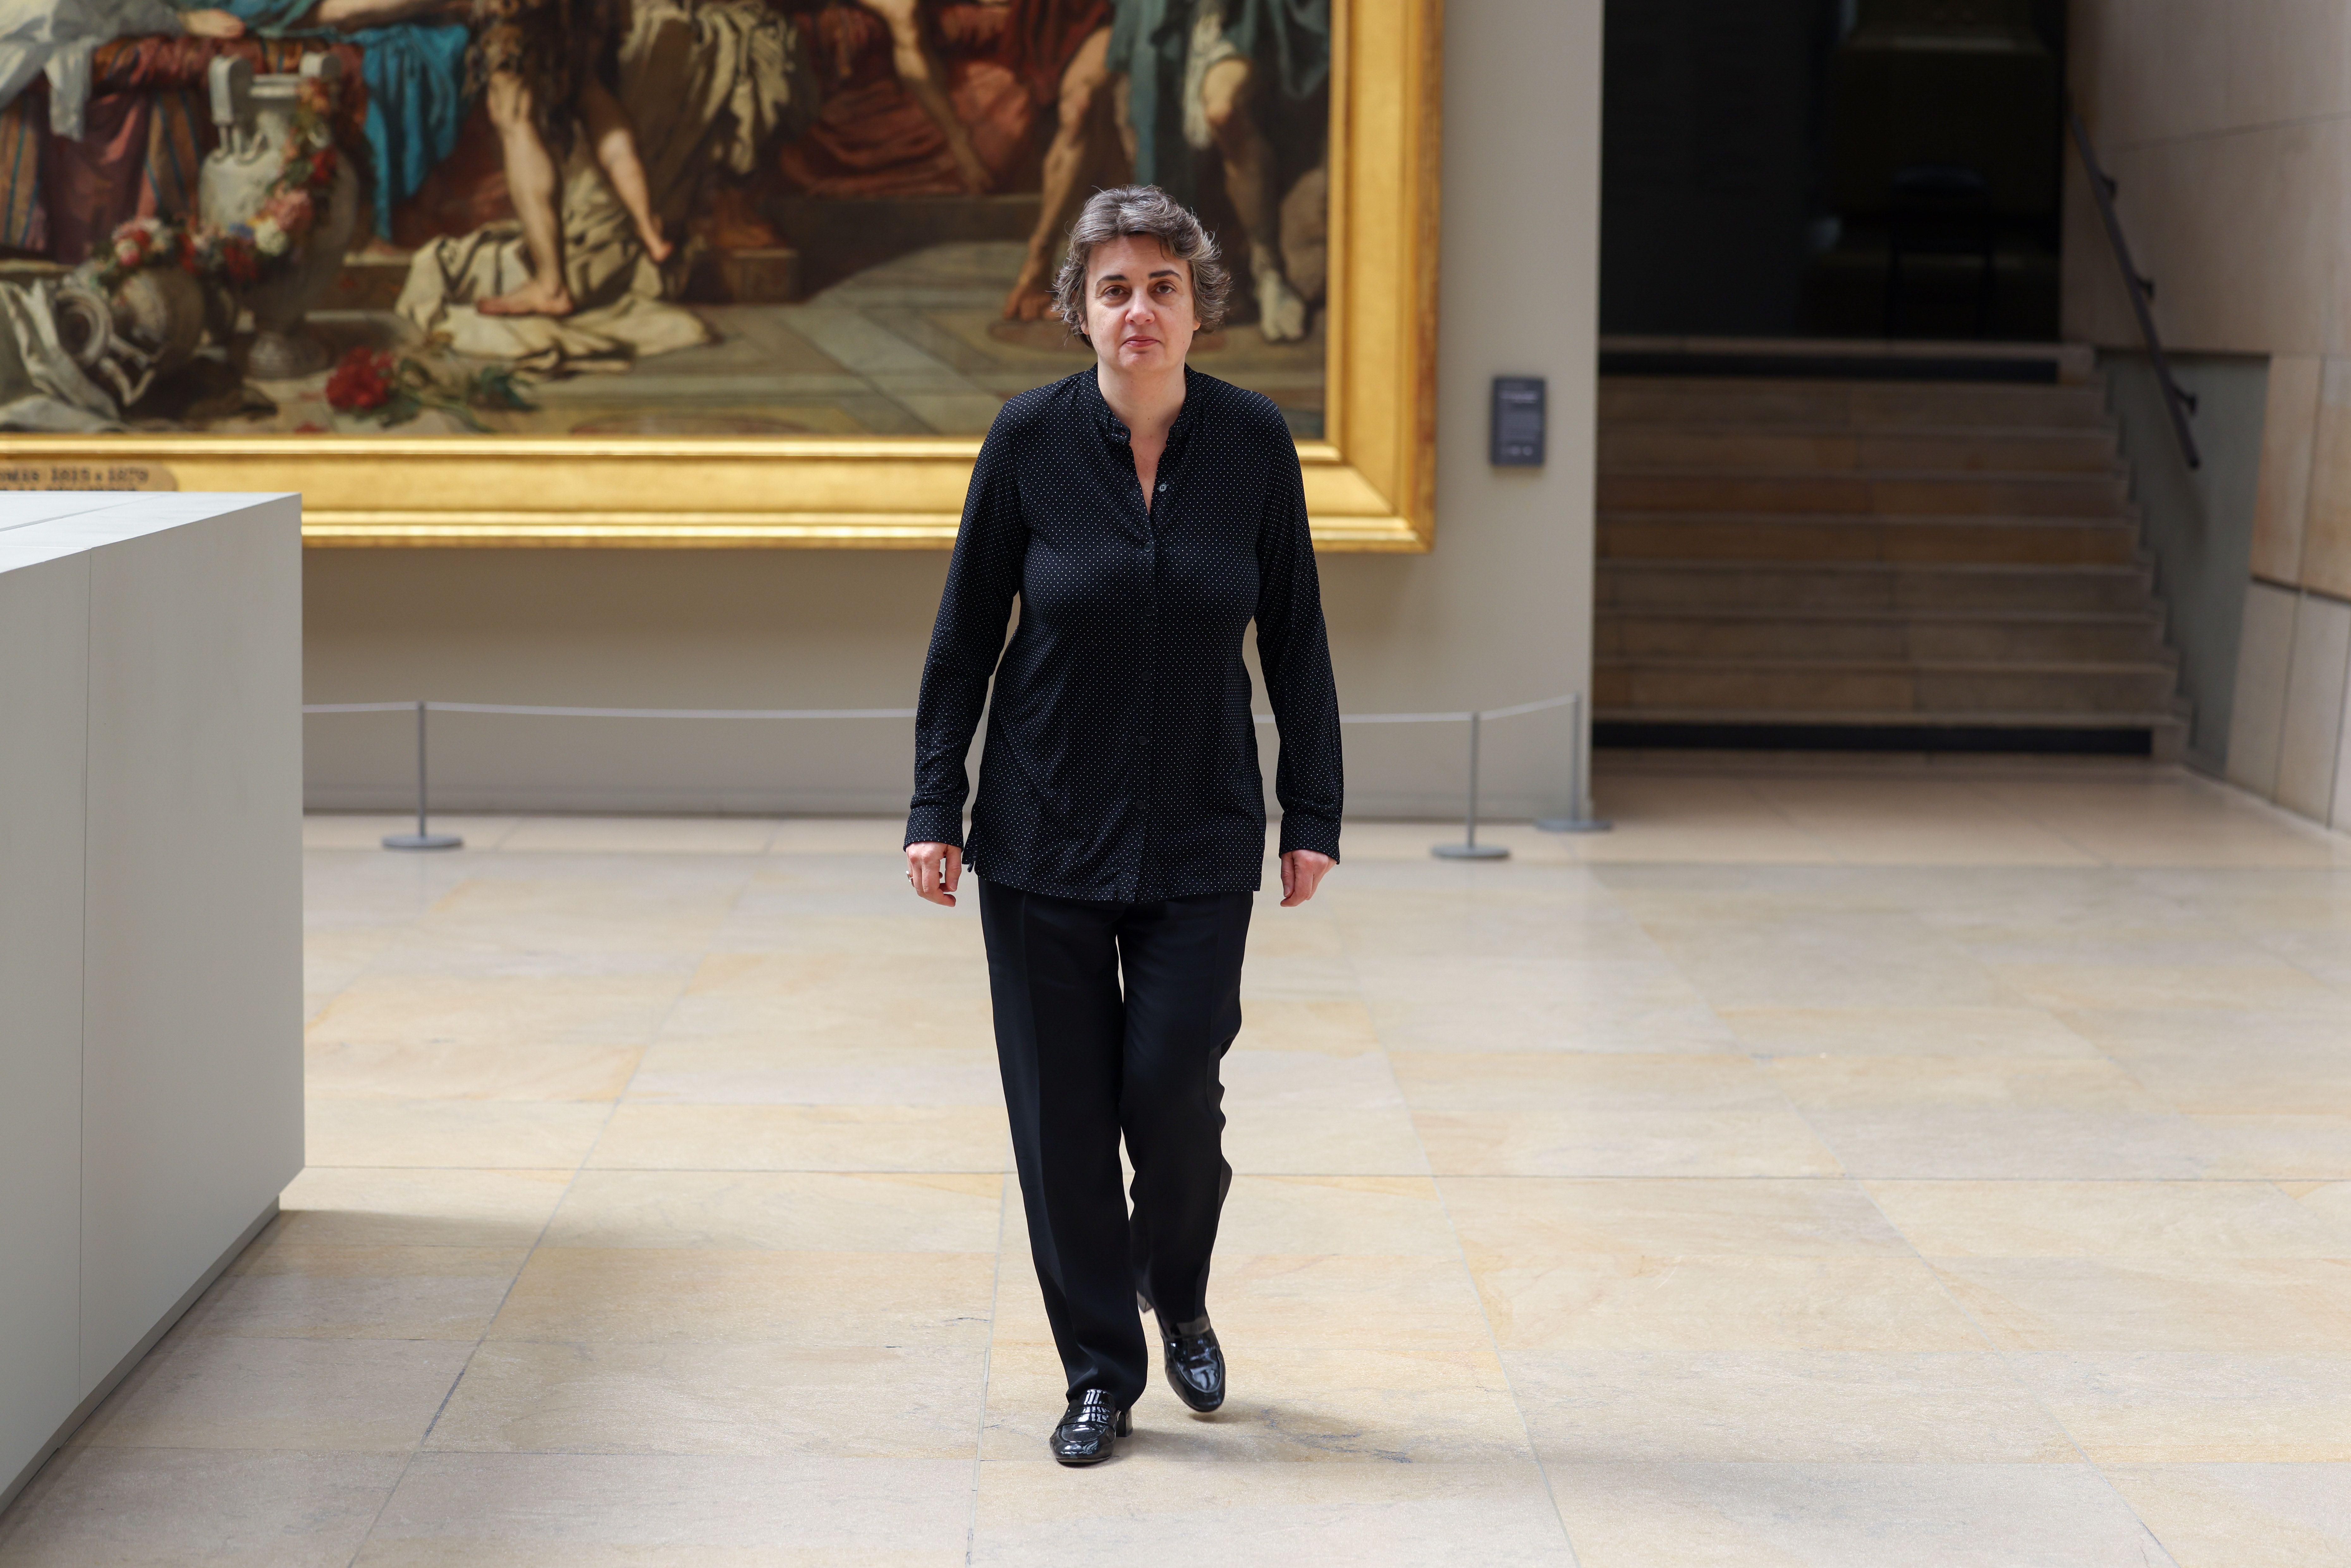 La directrice du musée Laurence des Cars est vue au musée d'Orsay le 17 mai 2021 à Paris. | Photo : Getty Images